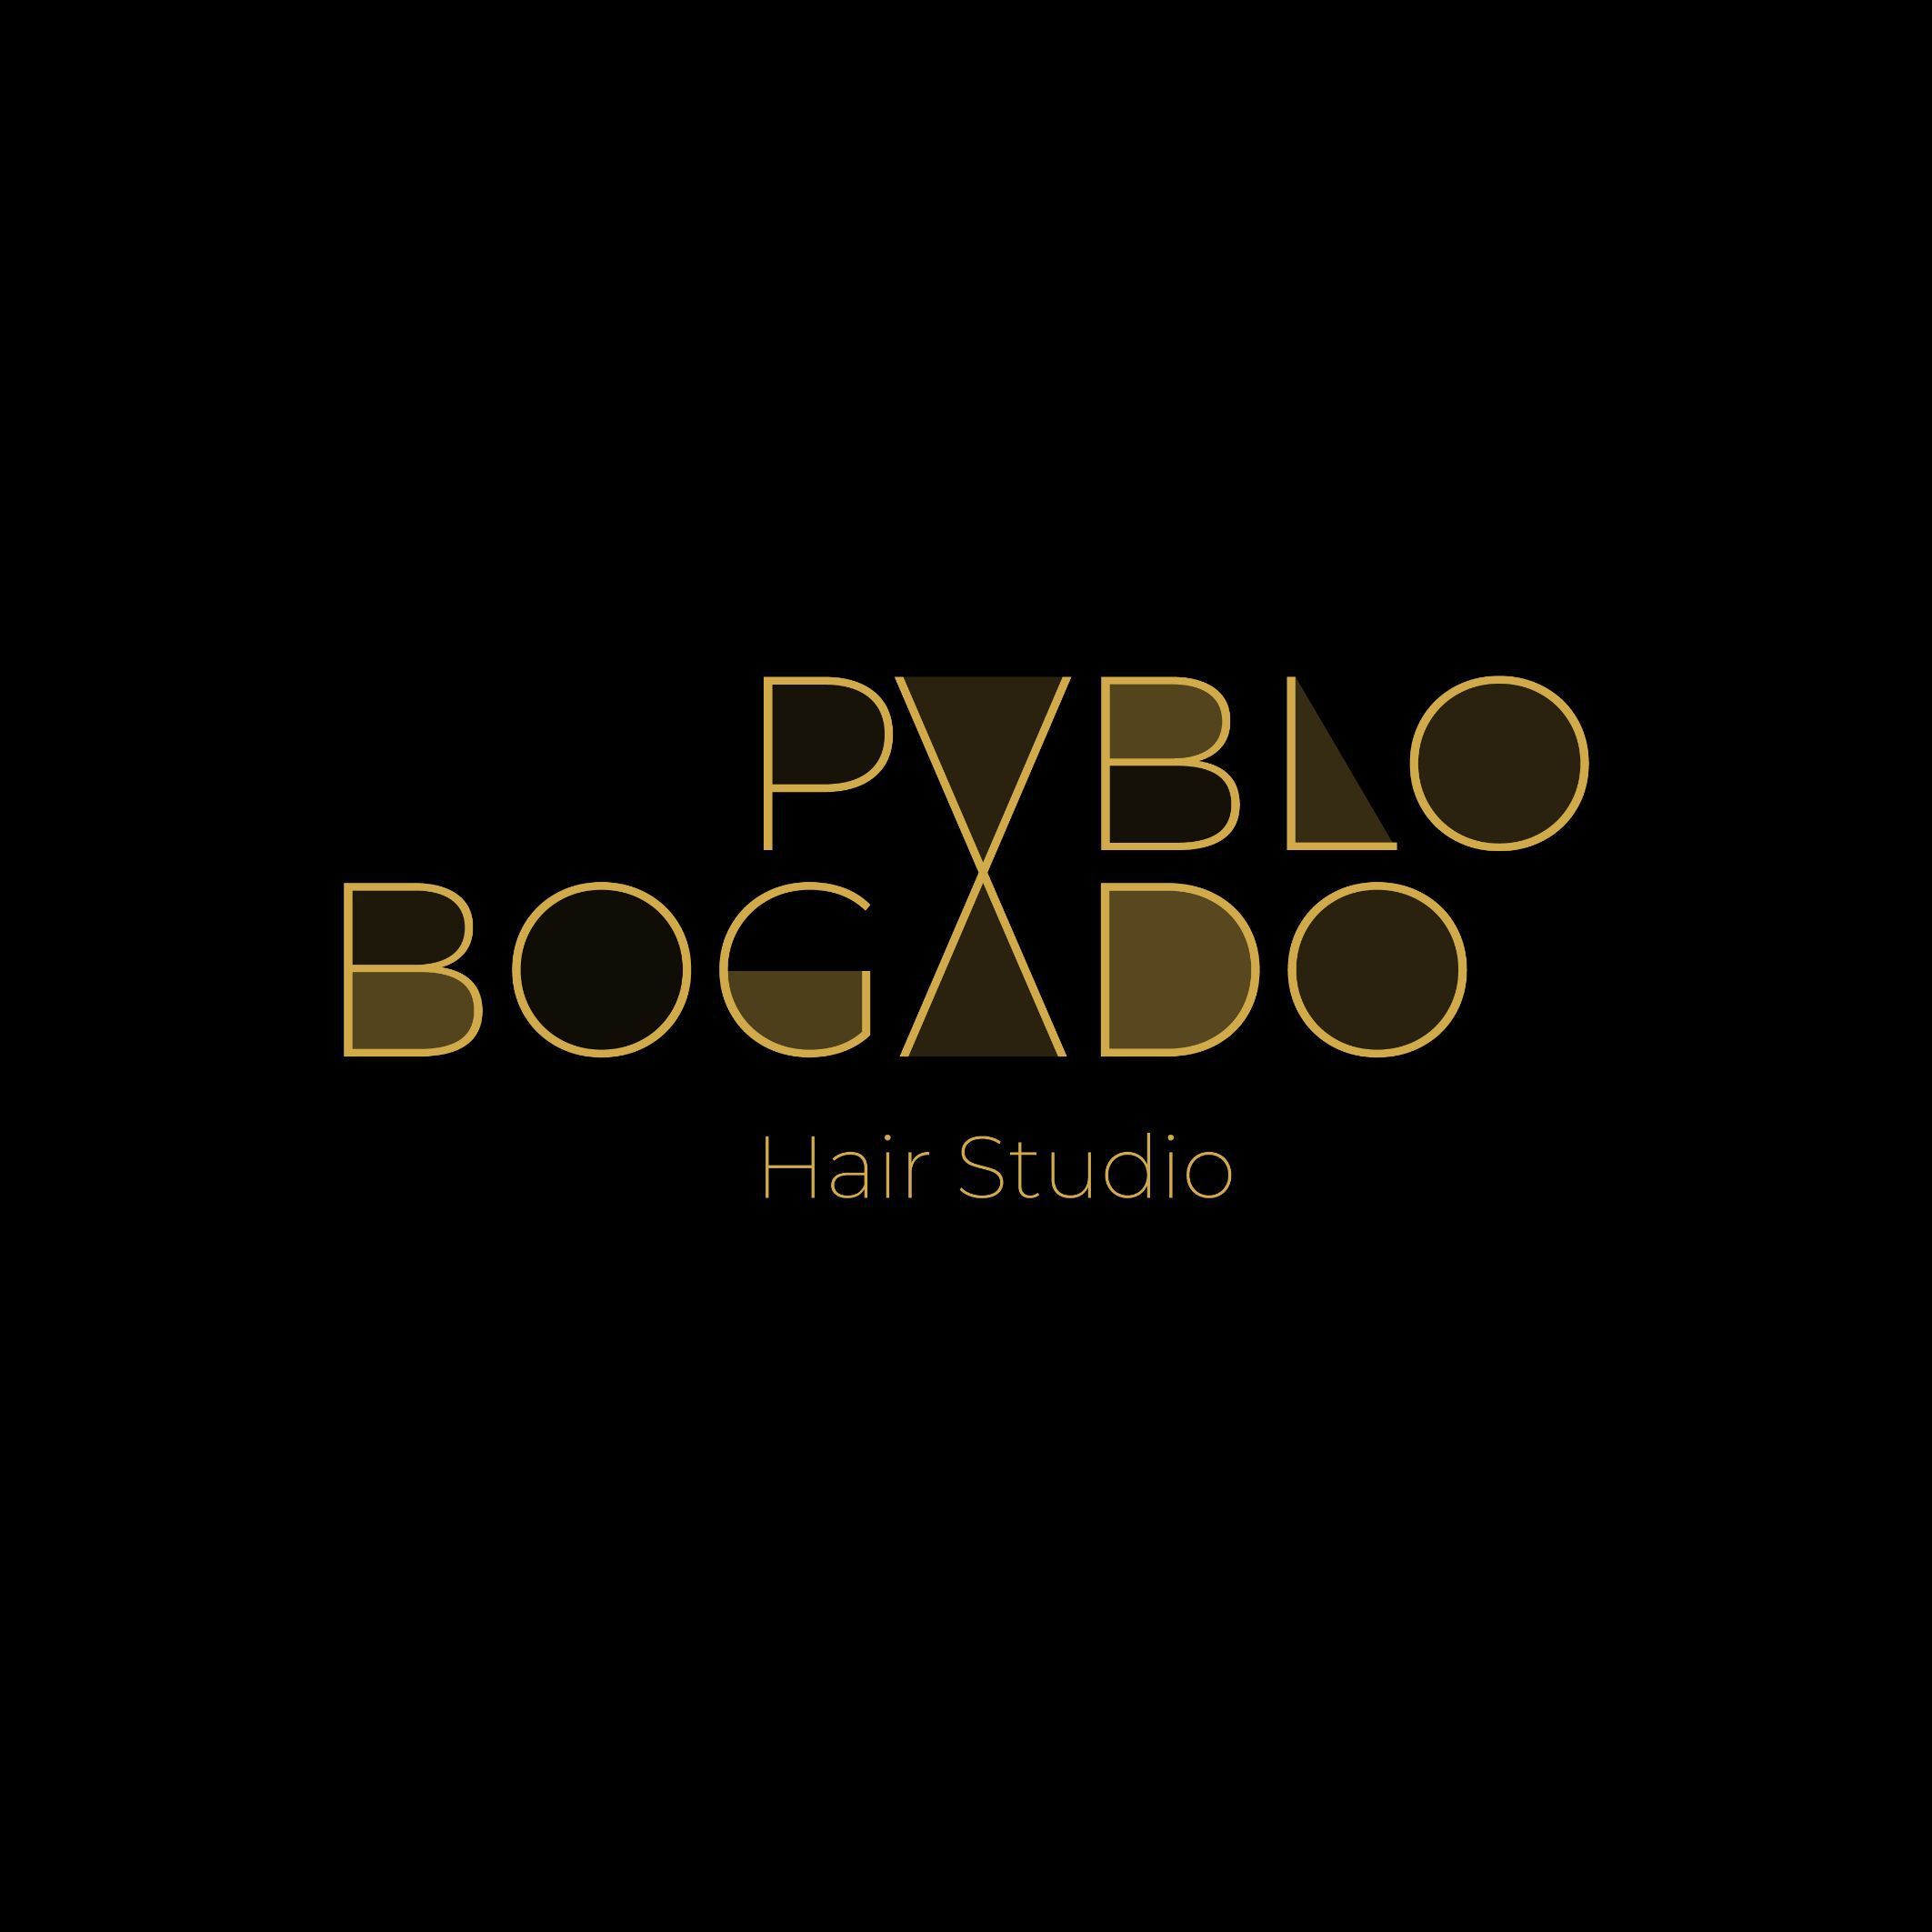 PABLO BOGADO - HAIR STUDIO, Travesía de Belén, 2, 28004, Madrid